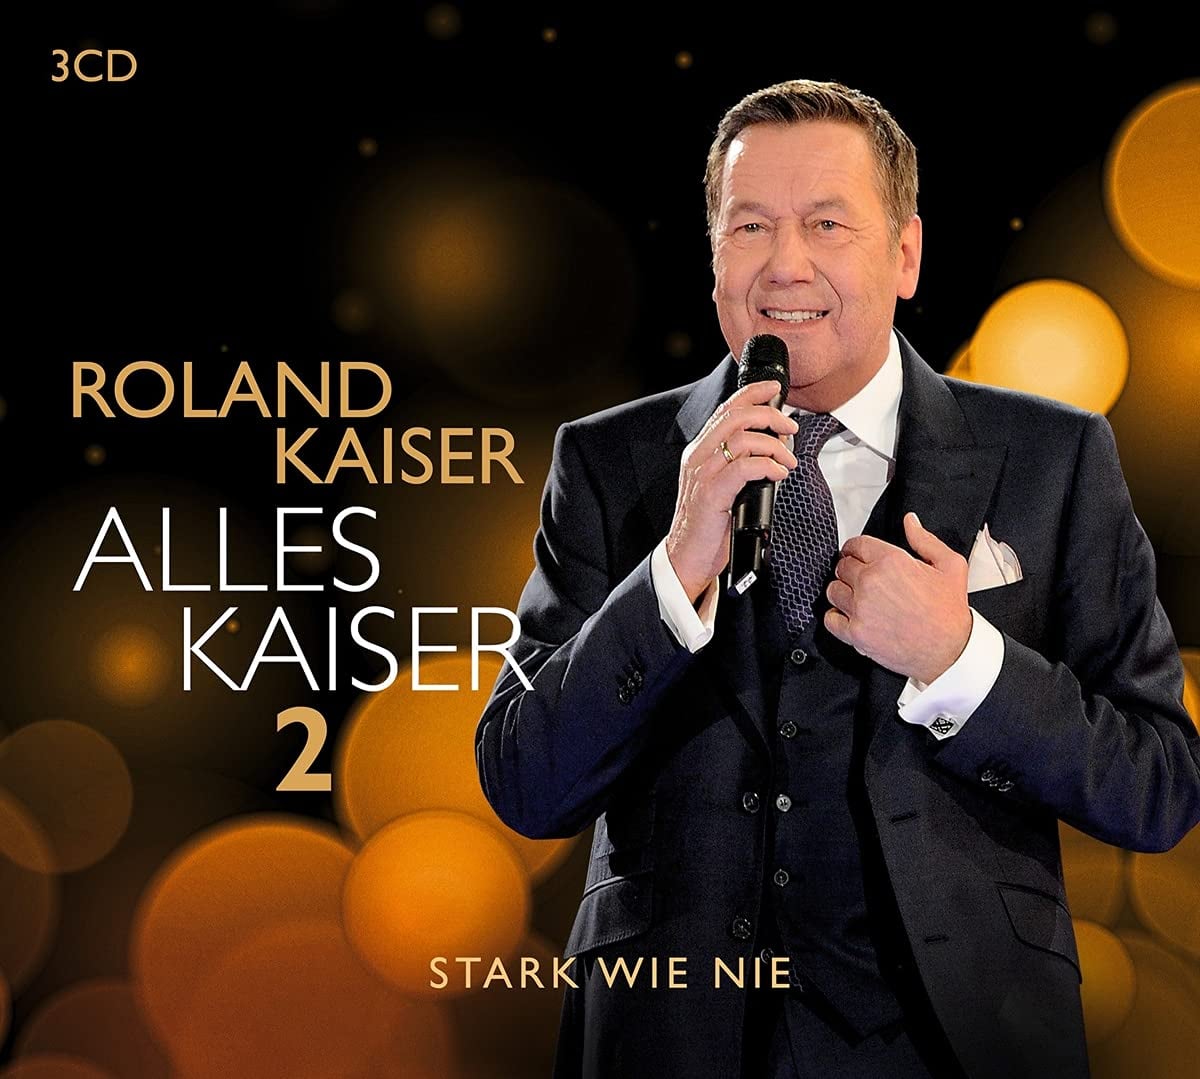 Roland Kaiser - Alles Kaiser 2 (Stark wie nie) (2021)